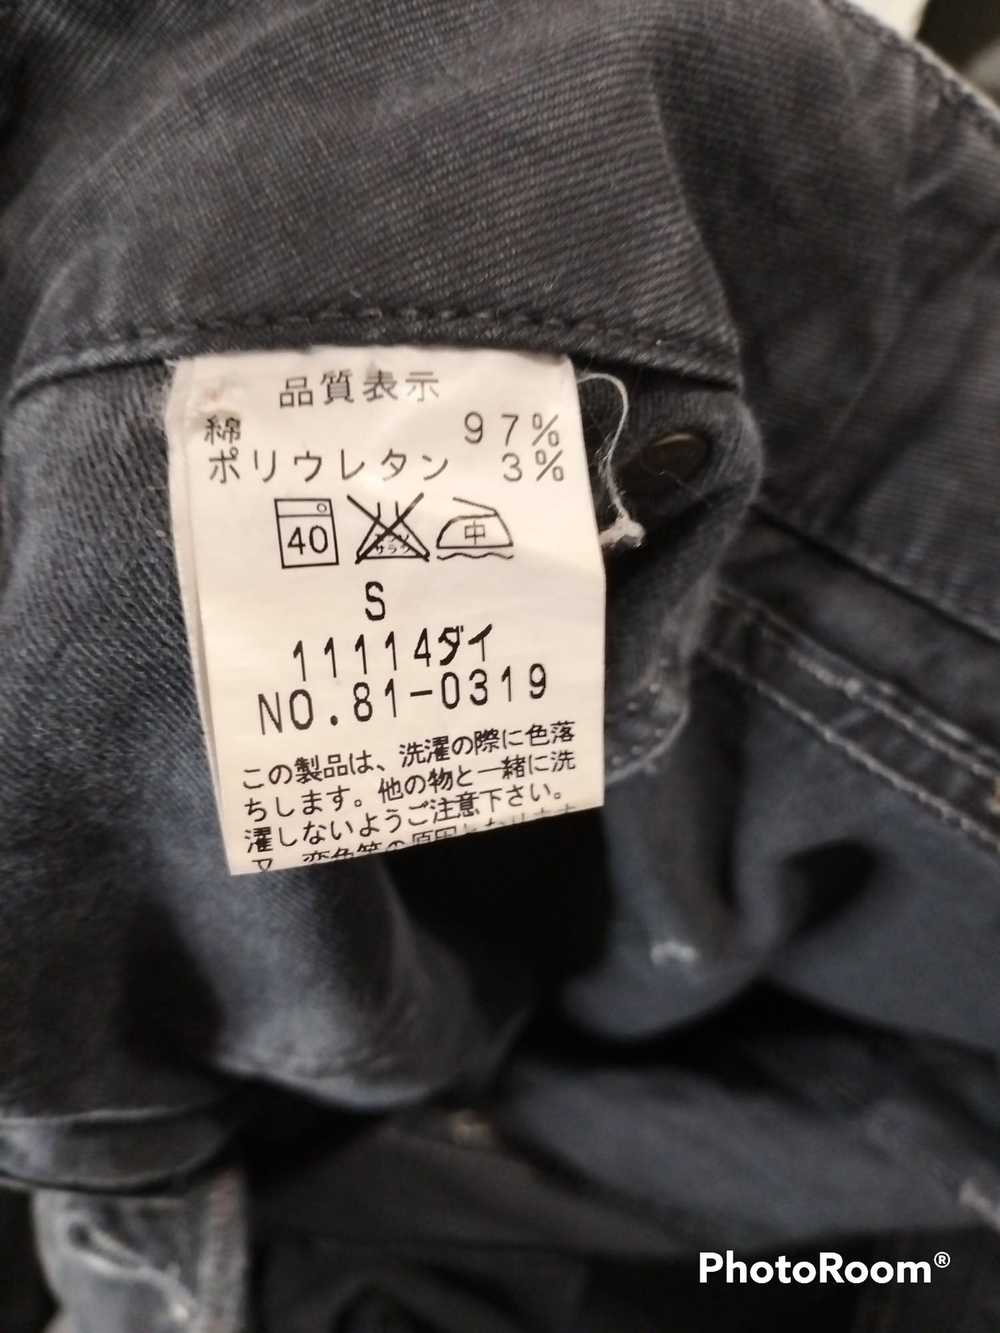 Japanese Brand × John Bull John Bull Cargo Pants - image 5